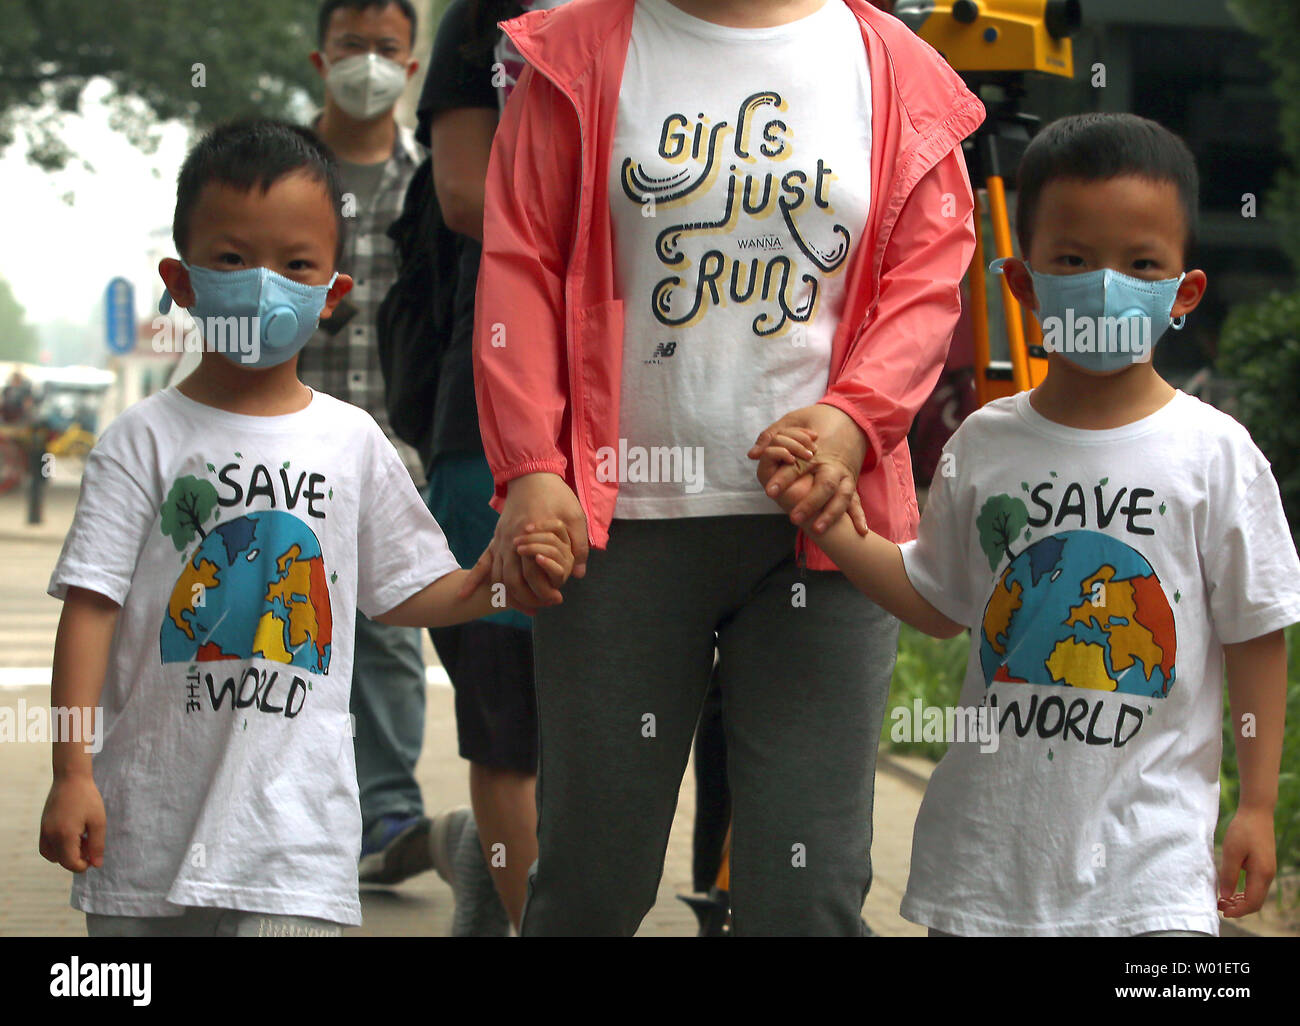 Eine Mutter und ihre Zwillinge tragen Gesichtsmasken gegen einen stark verschmutzten Tag in Peking am 12. Mai 2018 zu schützen. Chinas Luftverschmutzung führt 1,6 Millionen vorzeitige Todesfälle pro Jahr, nach Ansicht der Forscher am Institut für Arbeitsmedizin. Foto von Stephen Rasierer/UPI Stockfoto